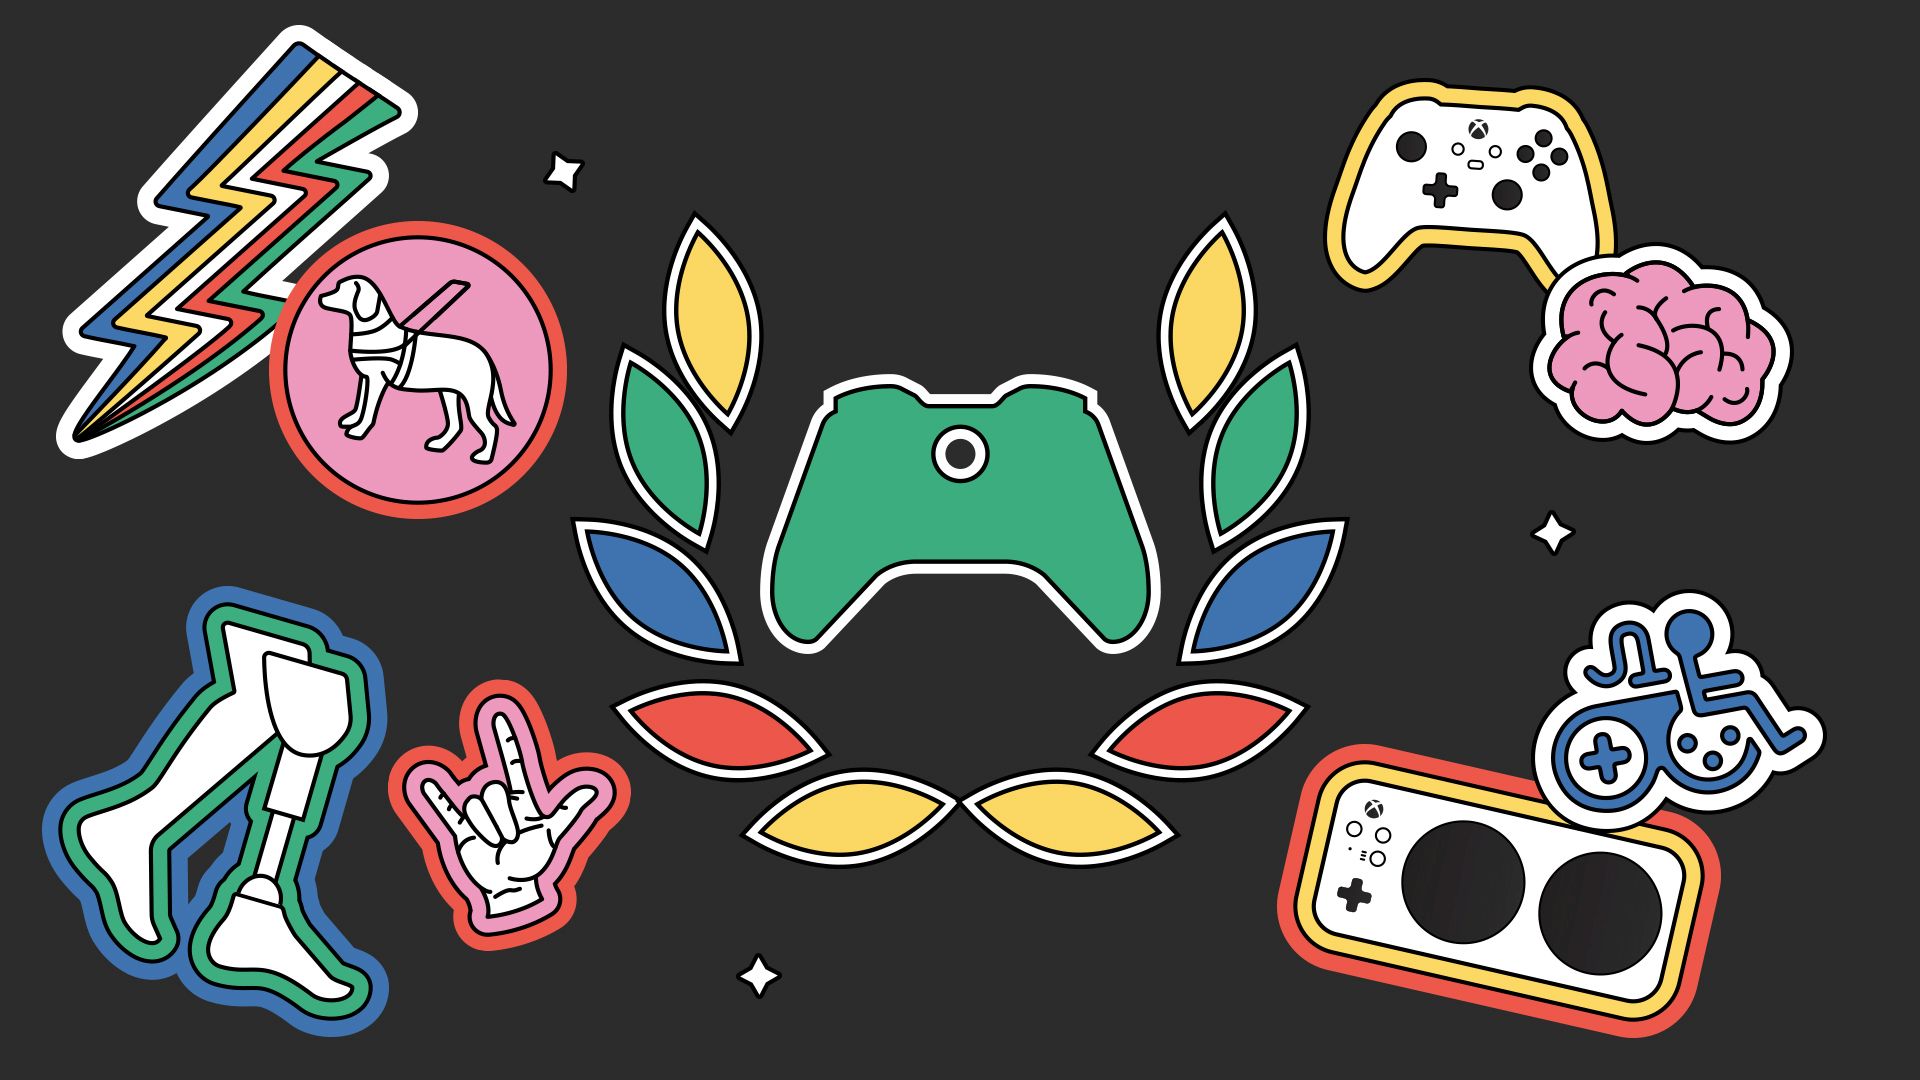 Das farbenfrohe Xbox Ambassadors-Logo befindet sich auf einem schwarzen Hintergrund, umgeben von folgenden Symbolen: dem Xbox Adaptive Controller, einem Gehirn, dem amerikanischen Gebärdensprachzeichen für "Ich liebe dich", einem bunten Blitz, einem Rollstuhl, einem Blindenhund, Beinprothesen sowie dem originalen Xbox Controller.